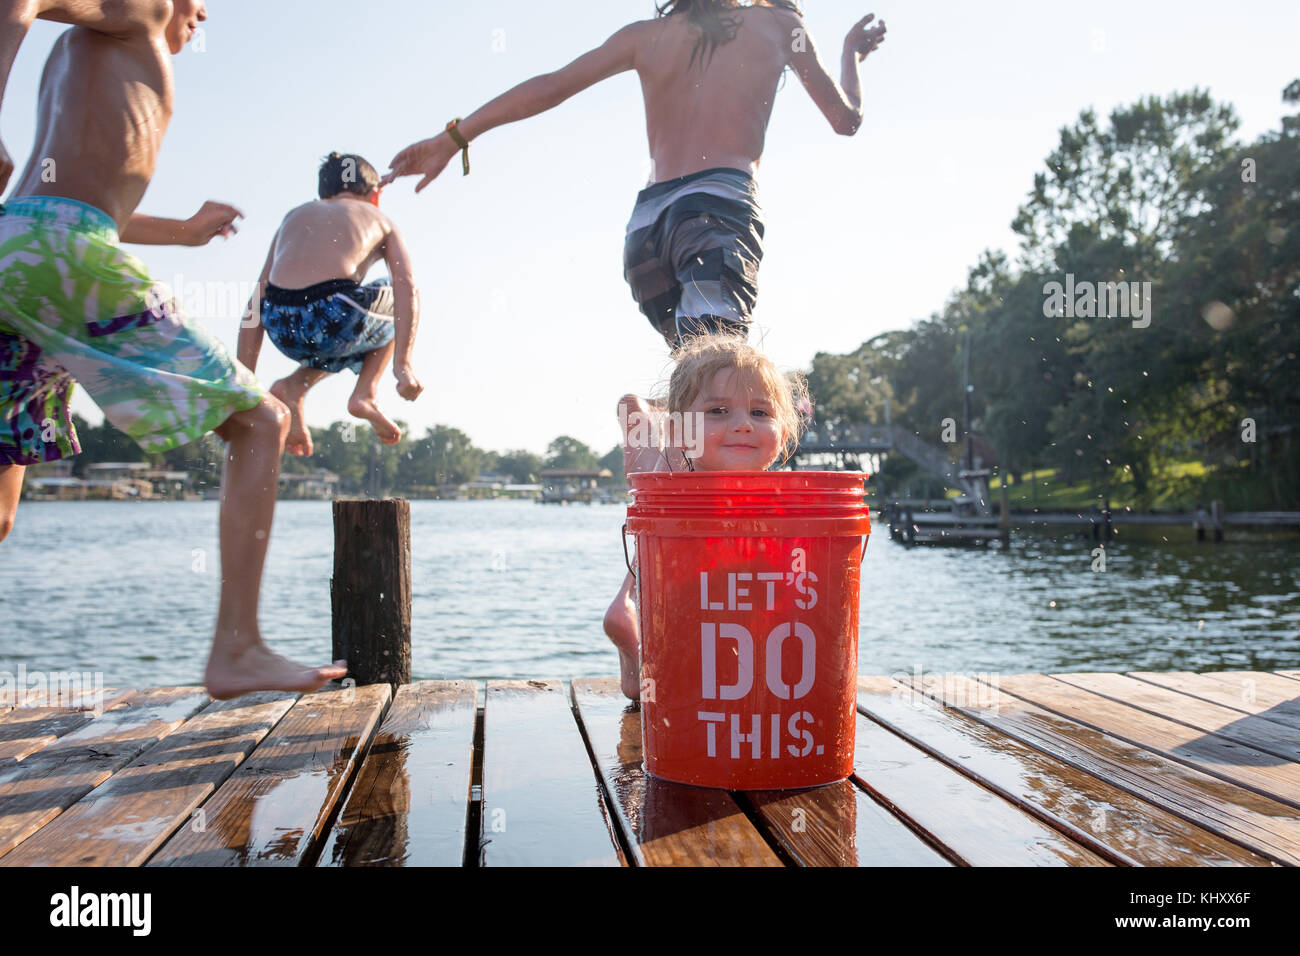 Ragazza giovane di nascondersi dietro la benna sul molo, bambini saltando nel lago Foto Stock